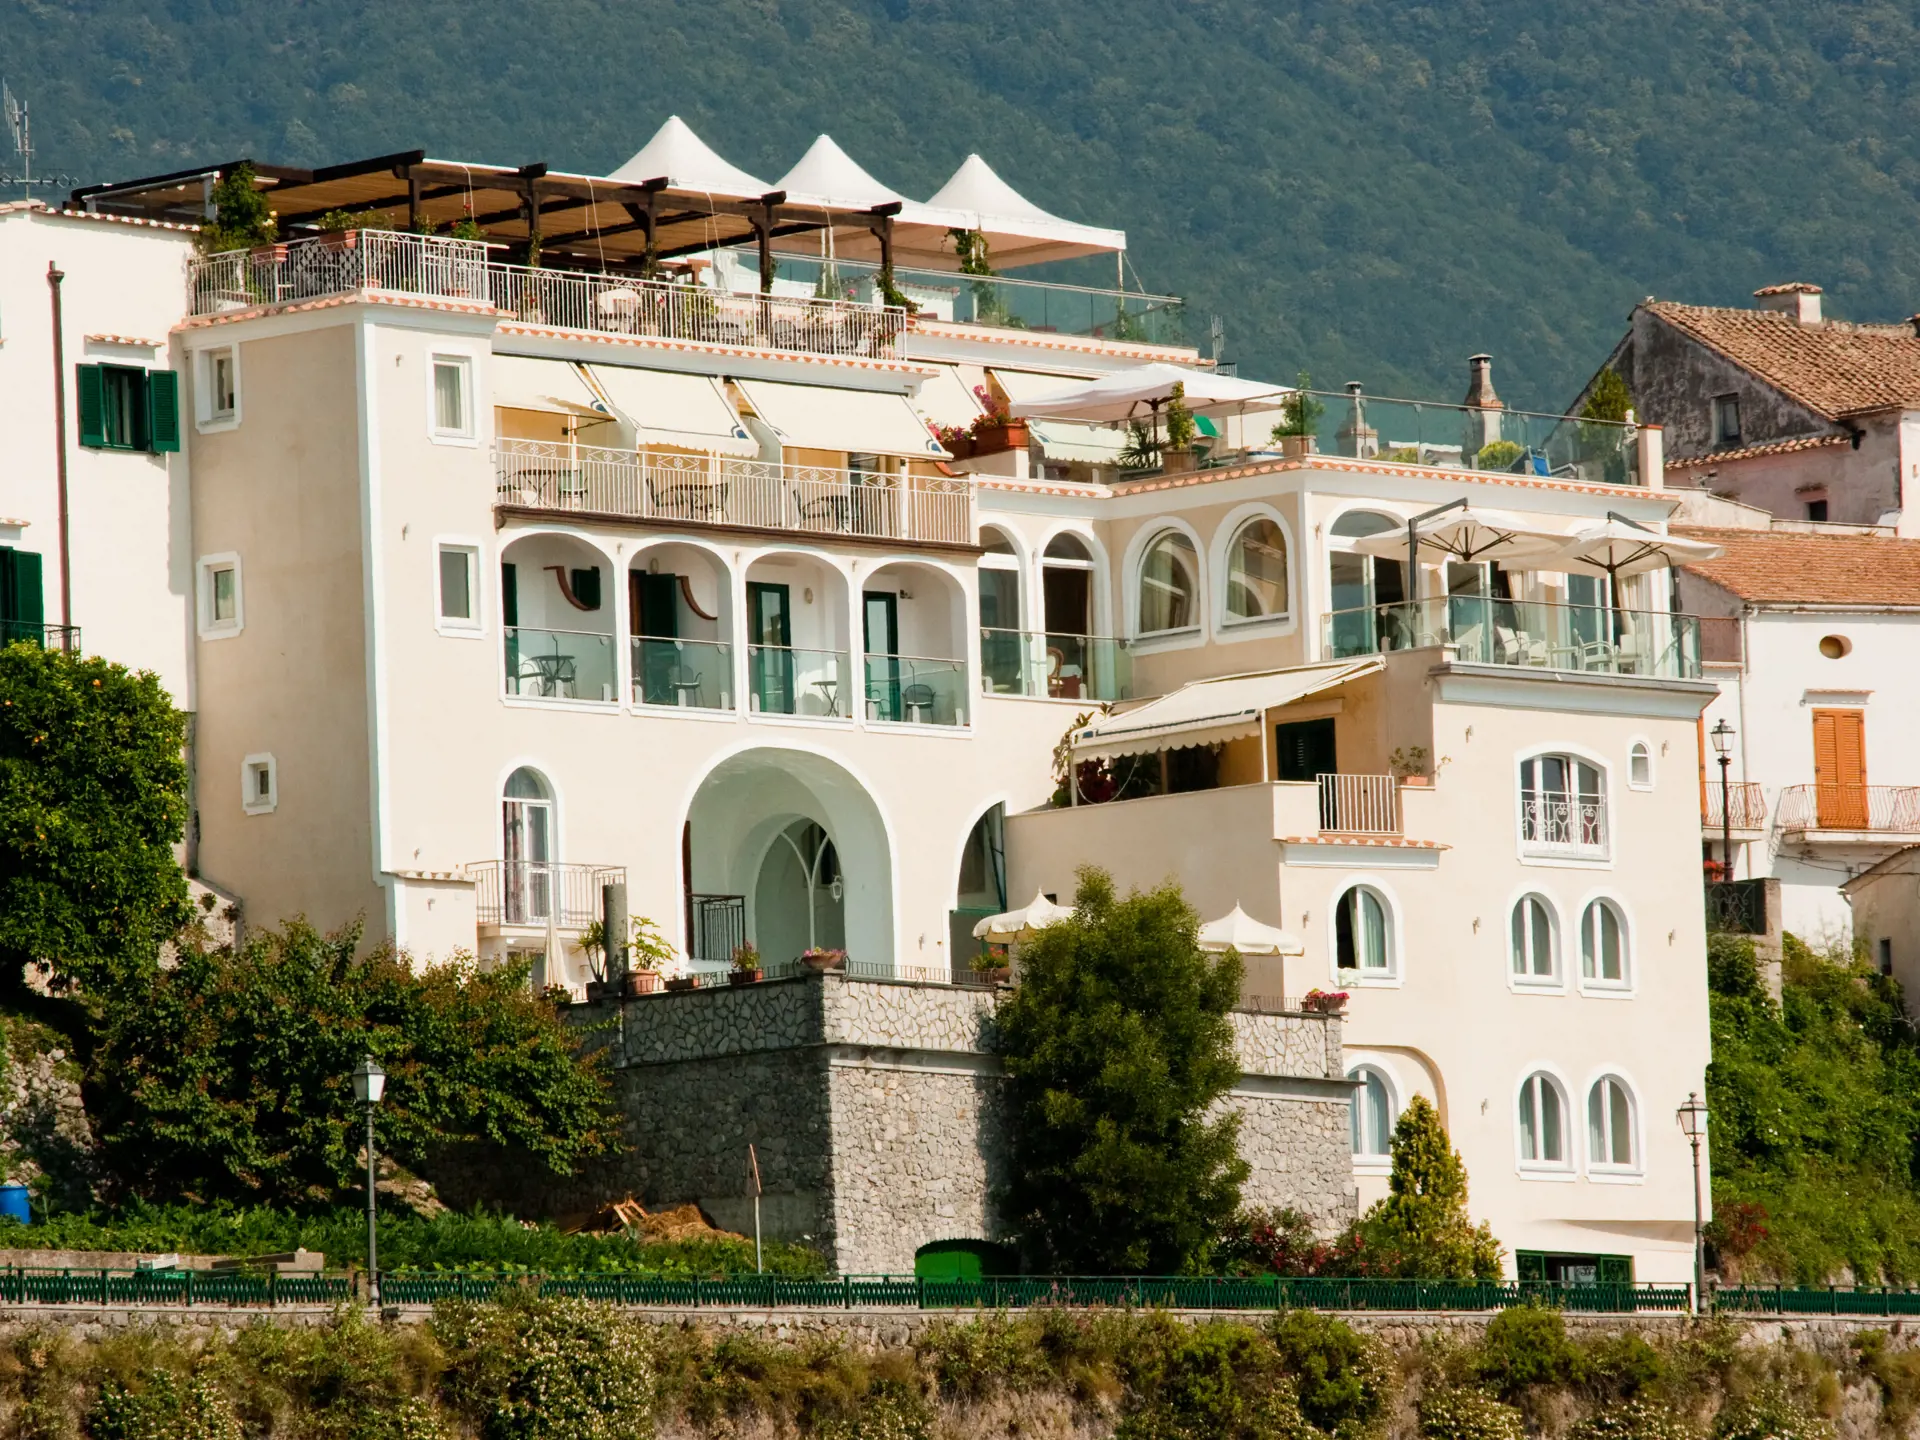 Hotel Bonadies ligger på en skråning i Ravello med en enestående udsigt